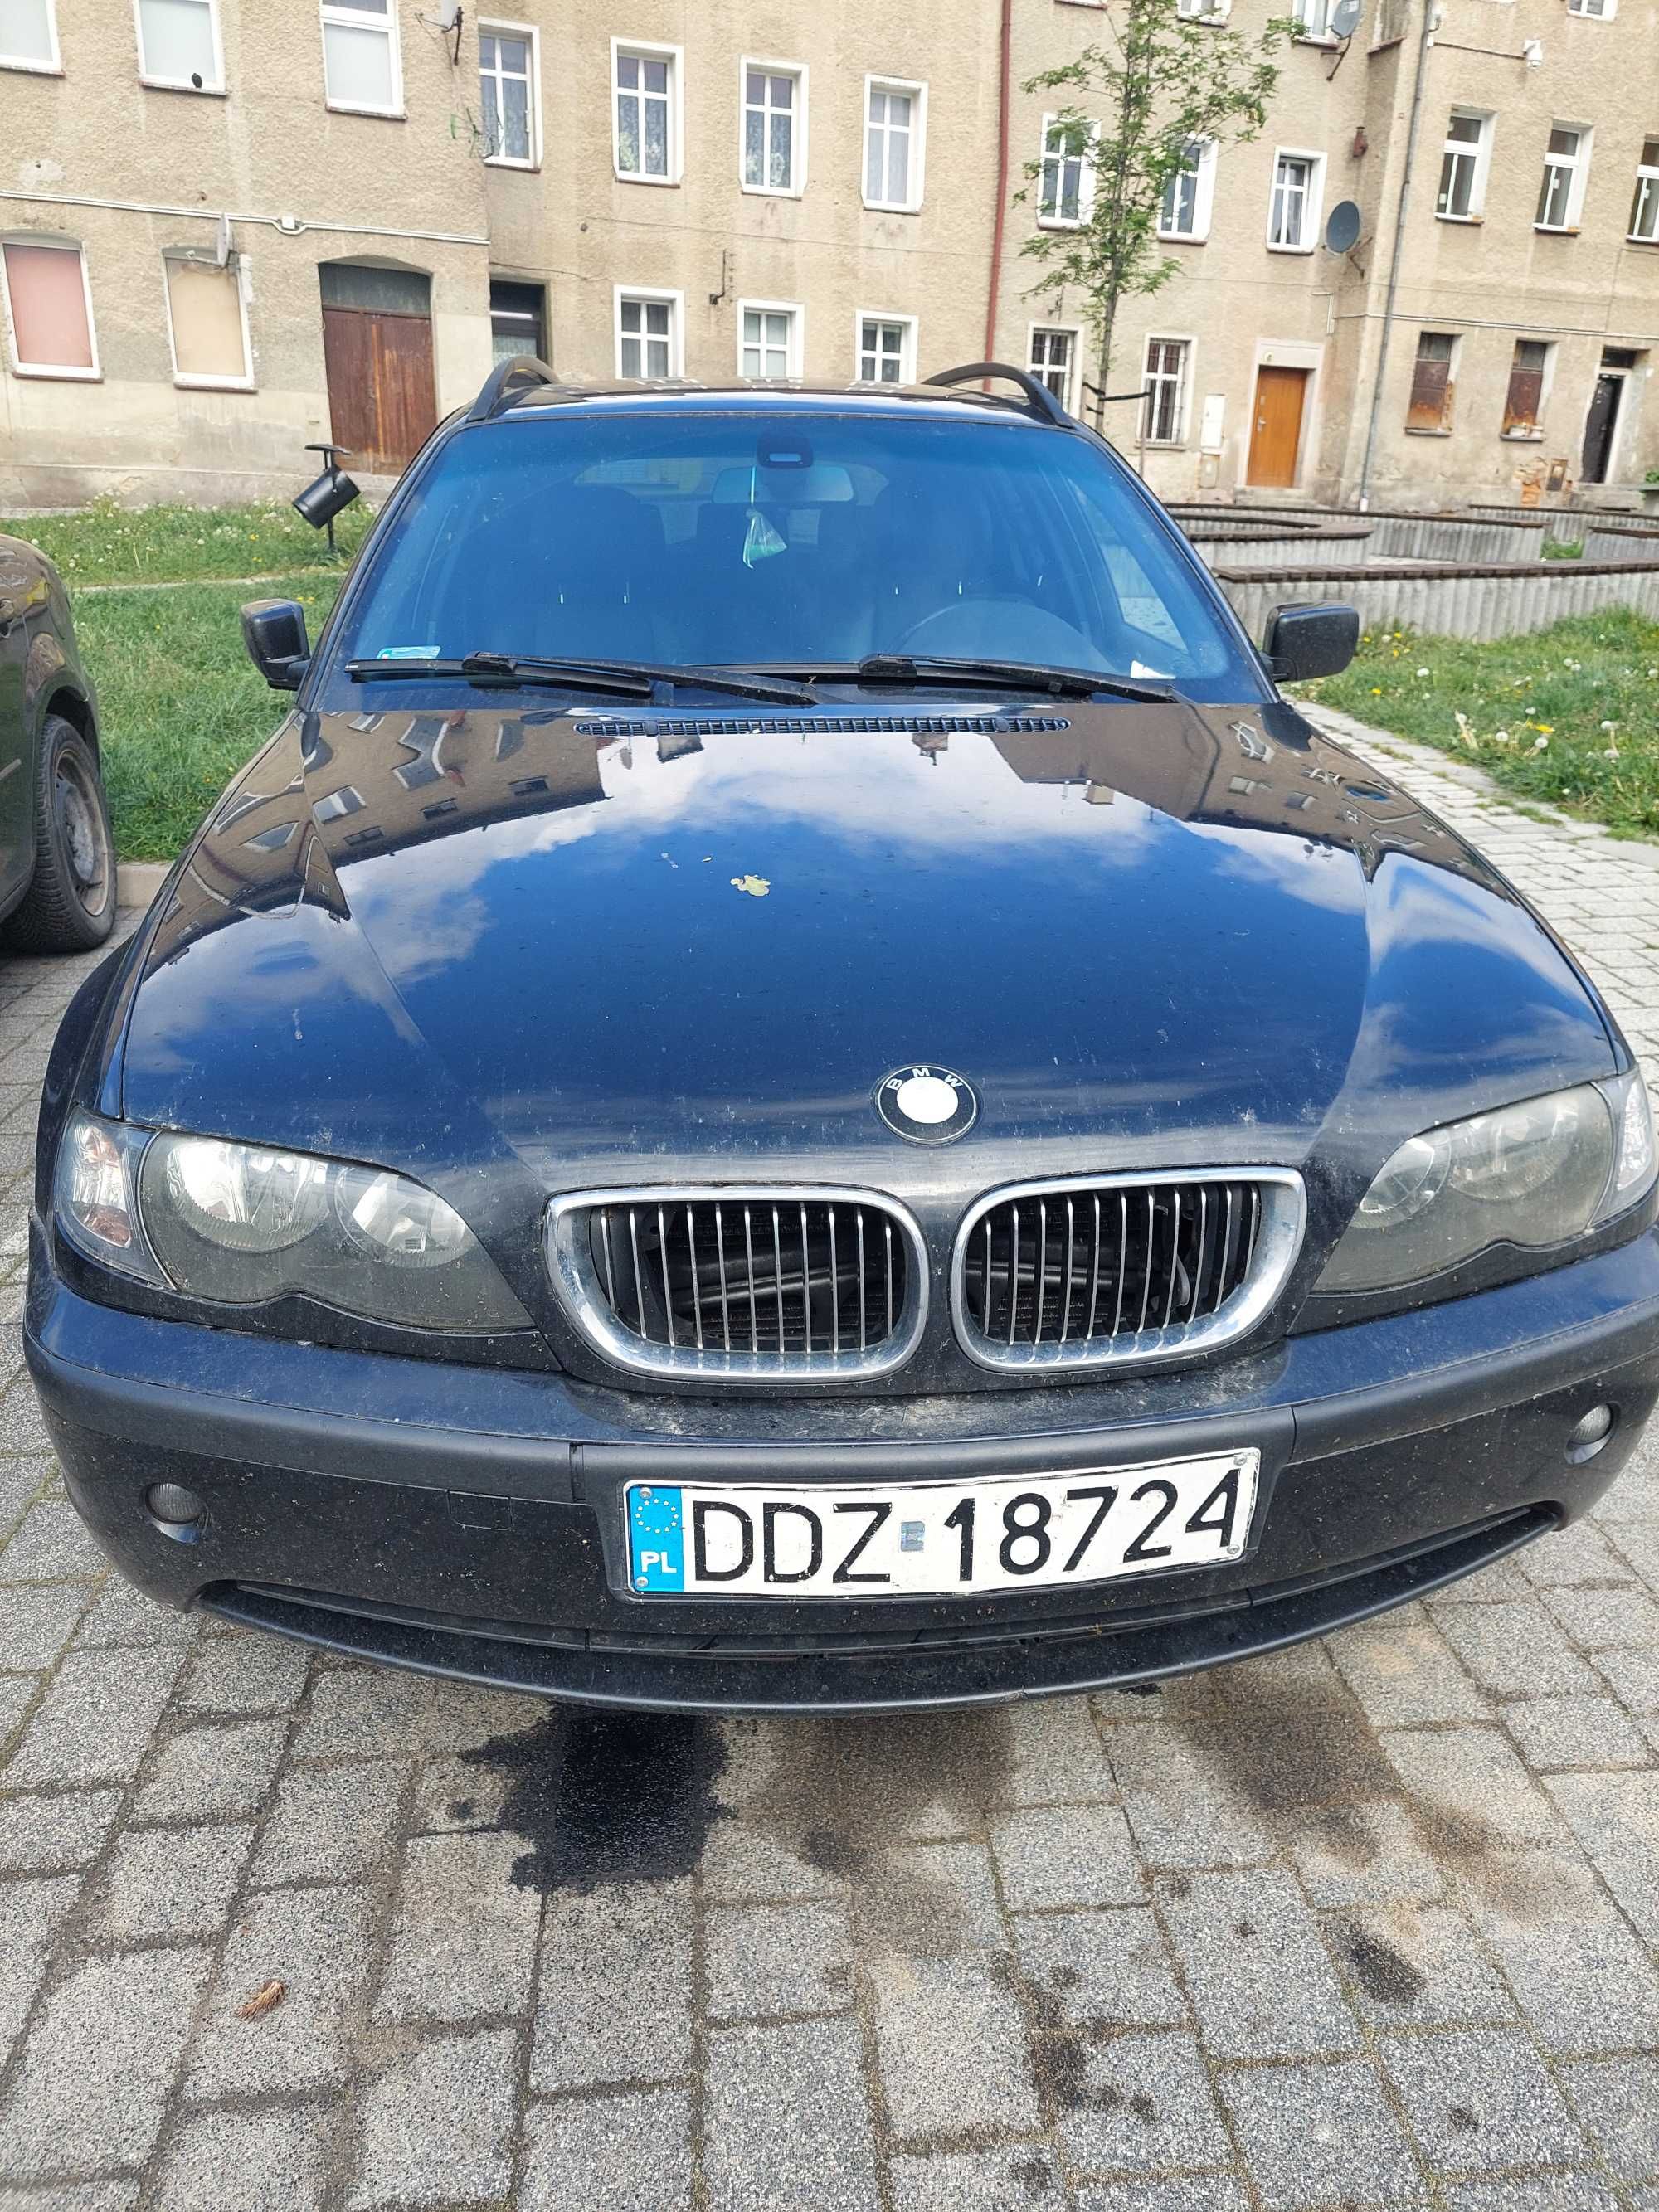 BMW 320d - uszkodzony